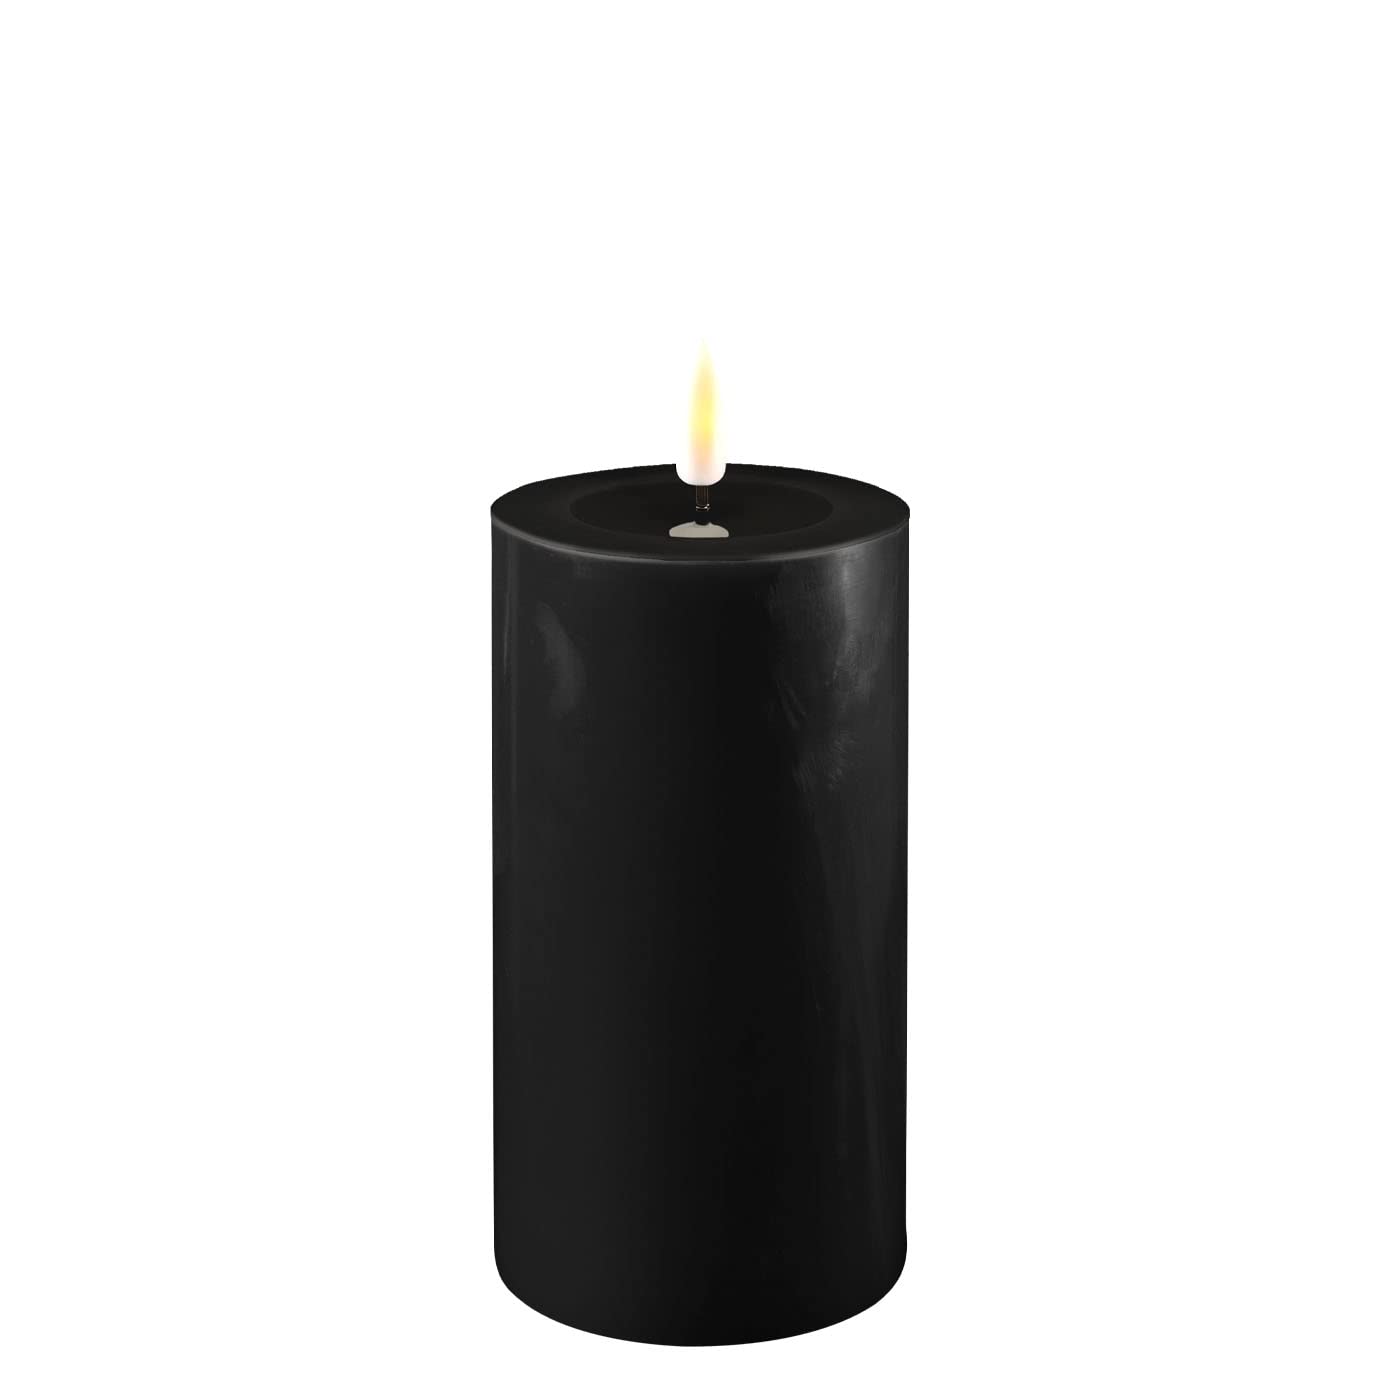 ReWu LED Kerze Deluxe Homeart, Indoor LED-Kerze mit realistischer Flamme auf einem Echtwachsspiegel, warmweißes Licht - Schwarz 7,5 x 15 cm